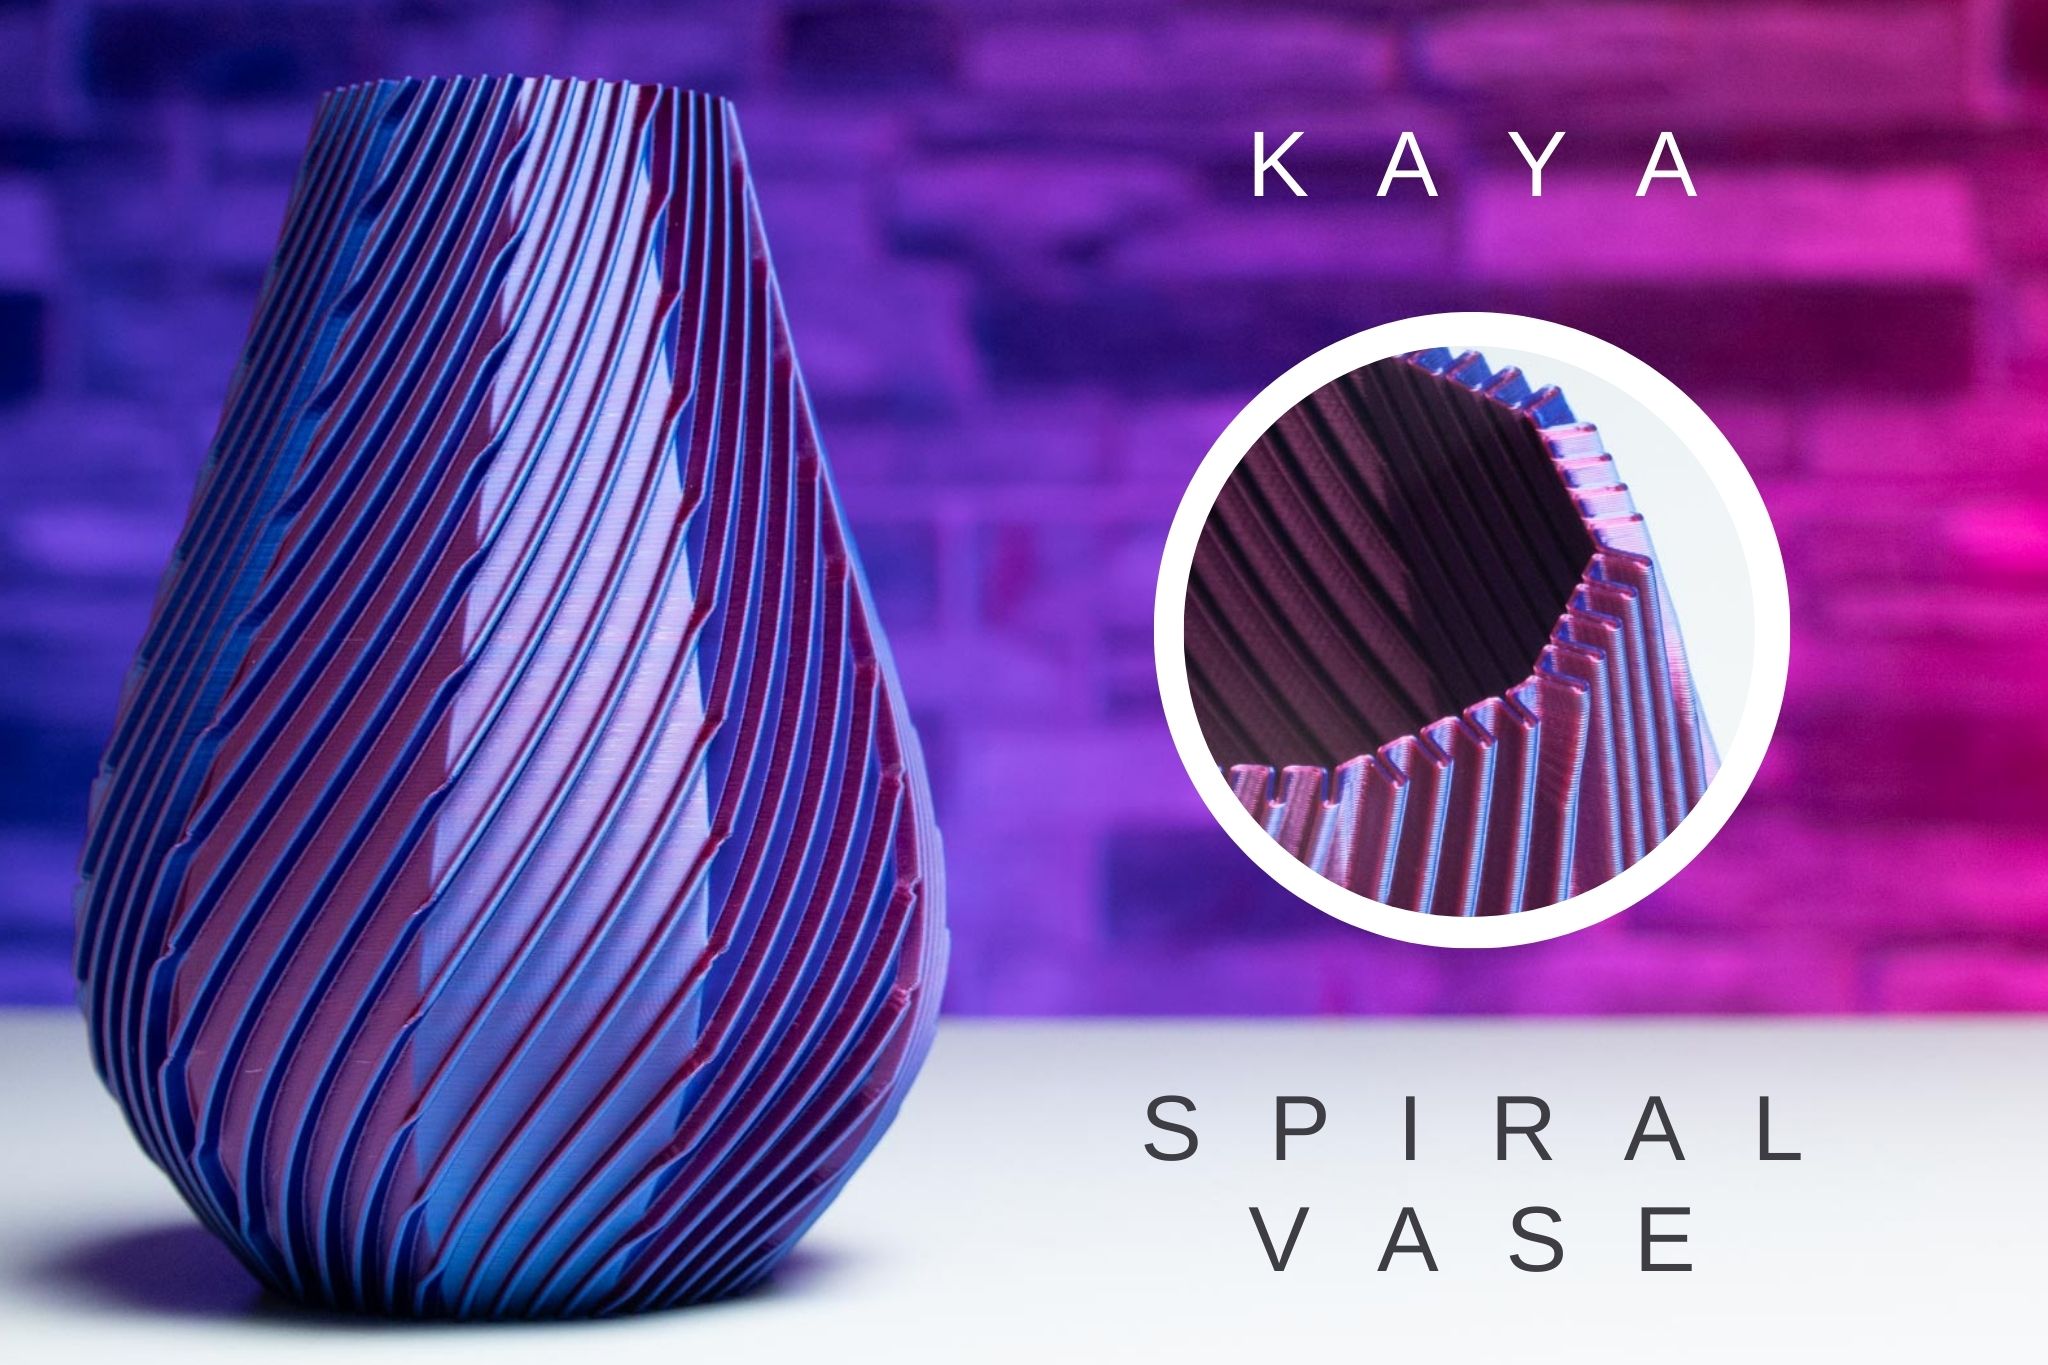 3D Printed Spiral Vase KAYA